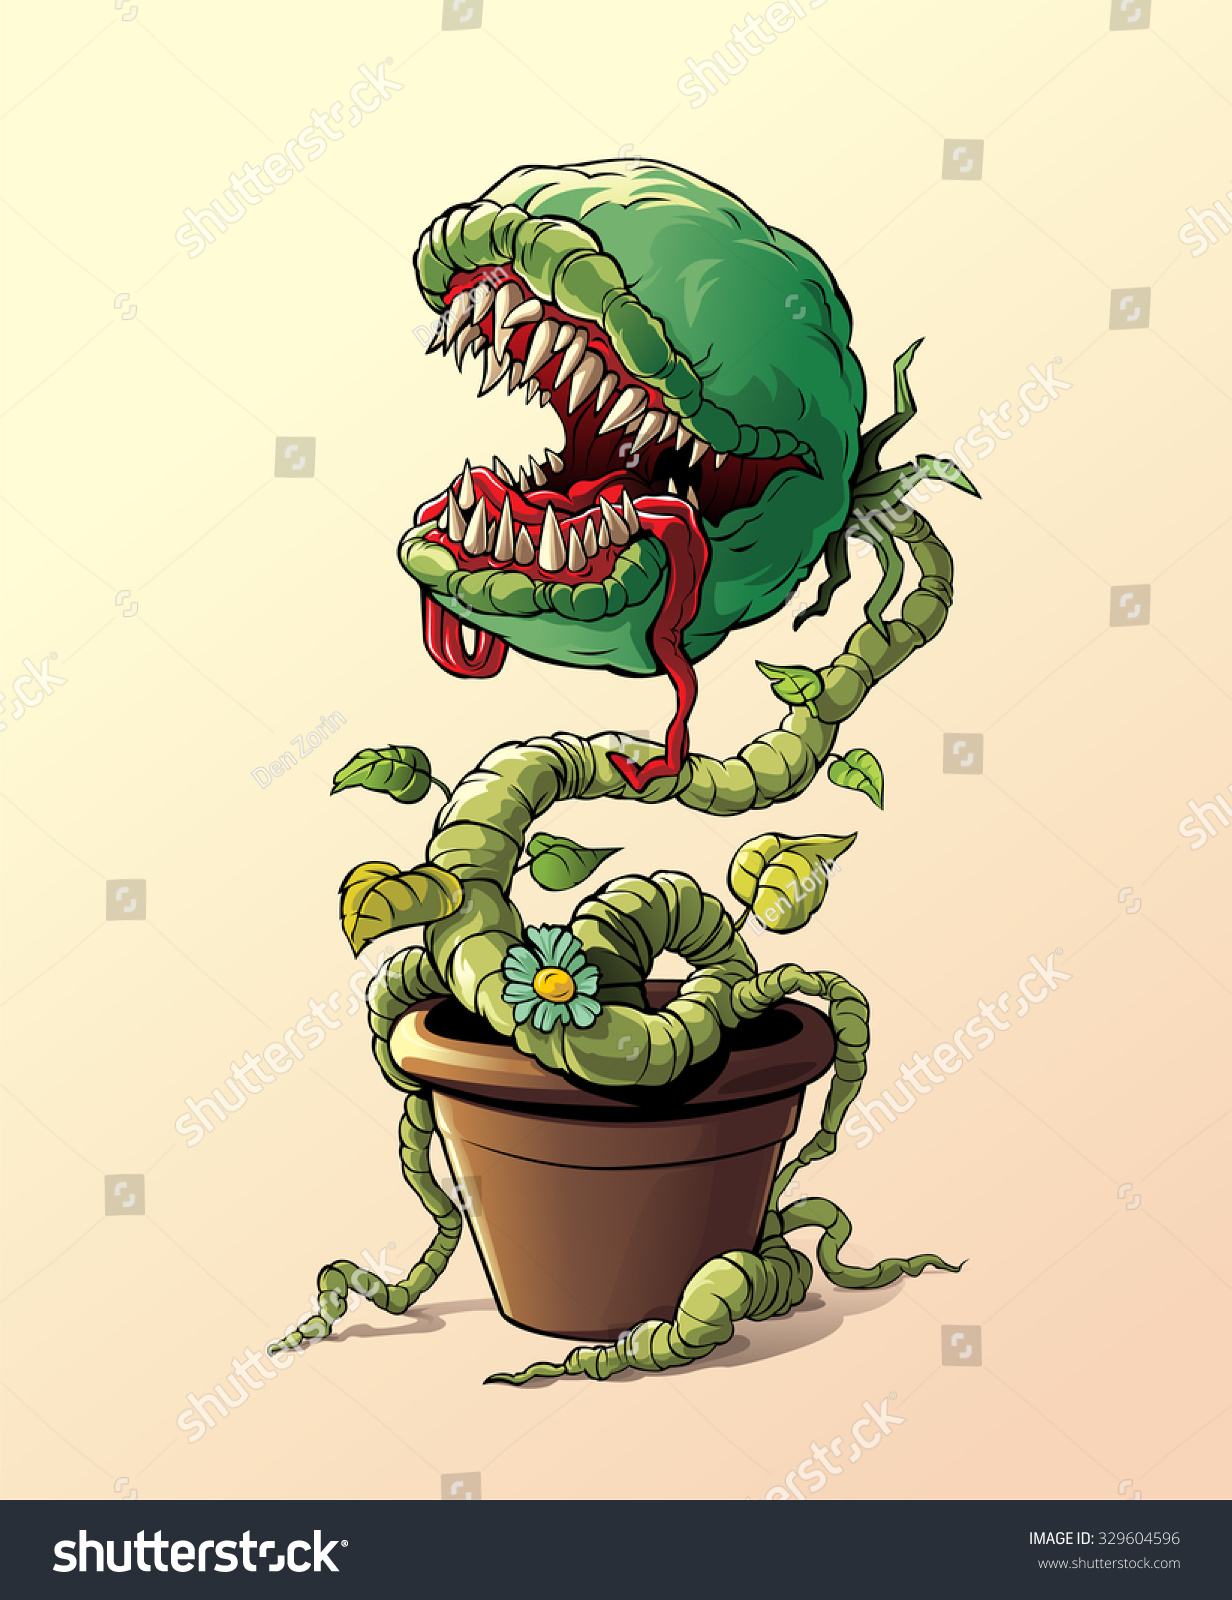 Plants vs Zombies 2 Хищные растения